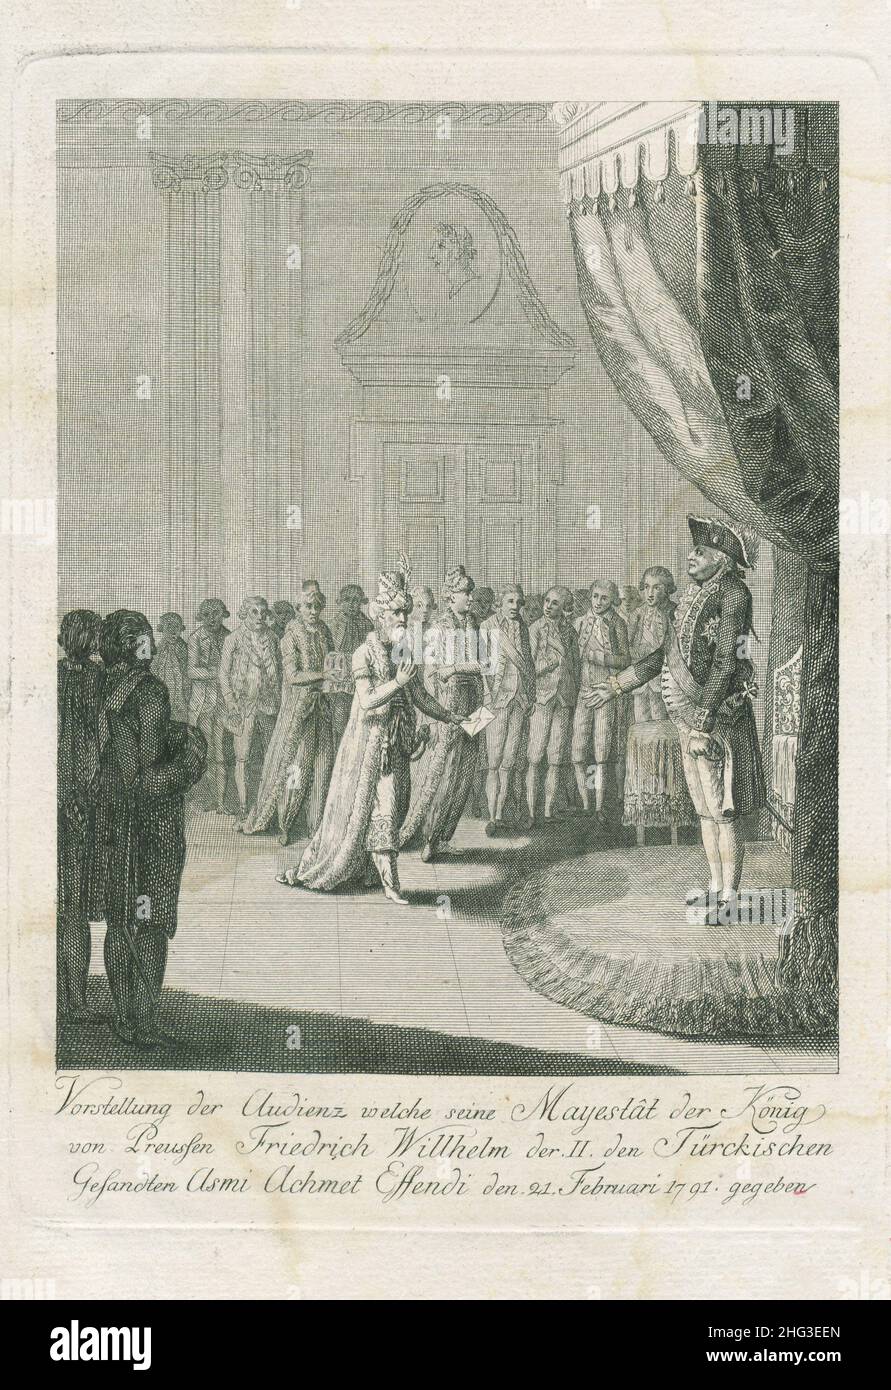 Gravure de la présentation du public que le roi de Prusse, Friedrich Wilhelm II, a donné à l'envoyé turc ASMI Achmet Effendi le 2 février Banque D'Images